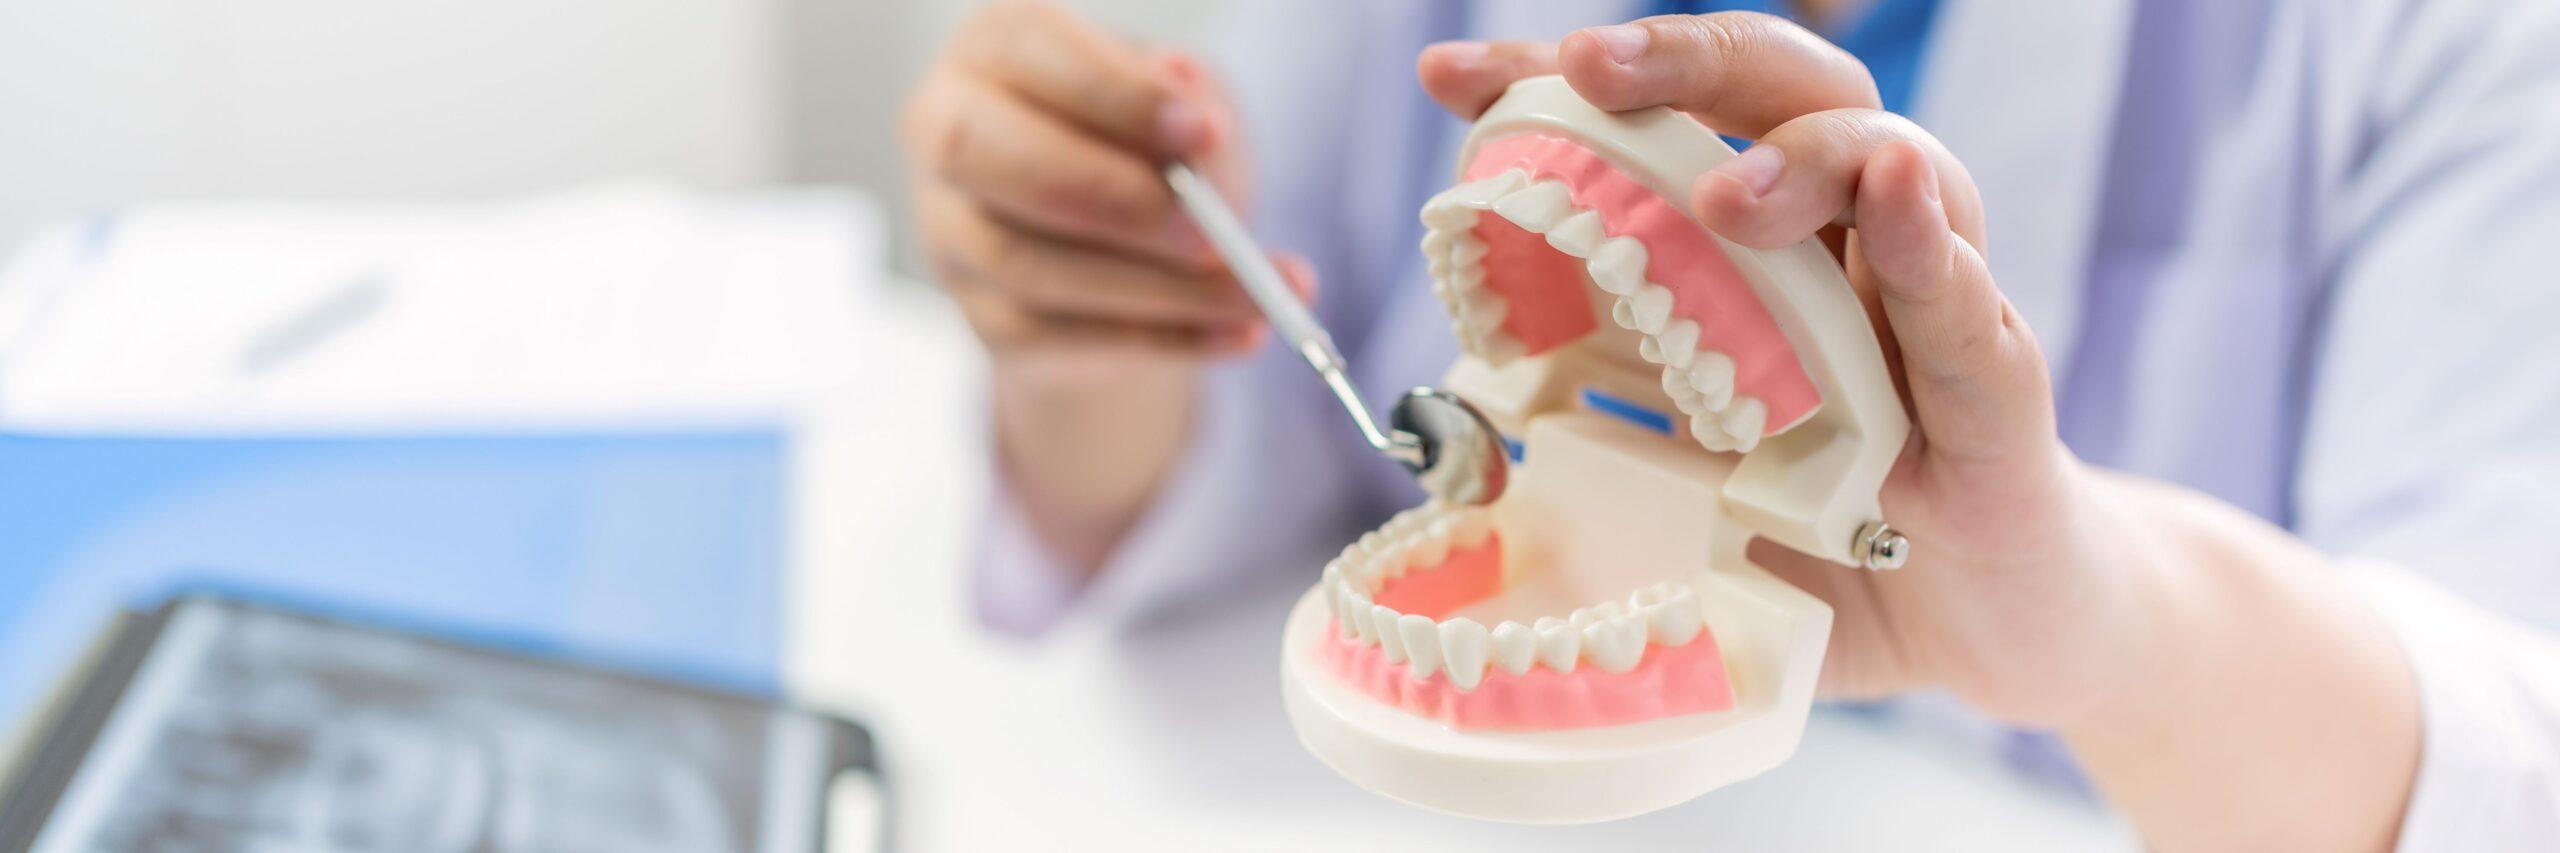 Zahnarzt in der Zahnklinik. Weißer, gesunder Zahn mit Zahnmodell bei Kieferchirurgen, die über Kieferröntgenaufnahmen auf Tablet-Medizin im Gesundheitswesen sprechen. Oralchirurgie-Konzept.